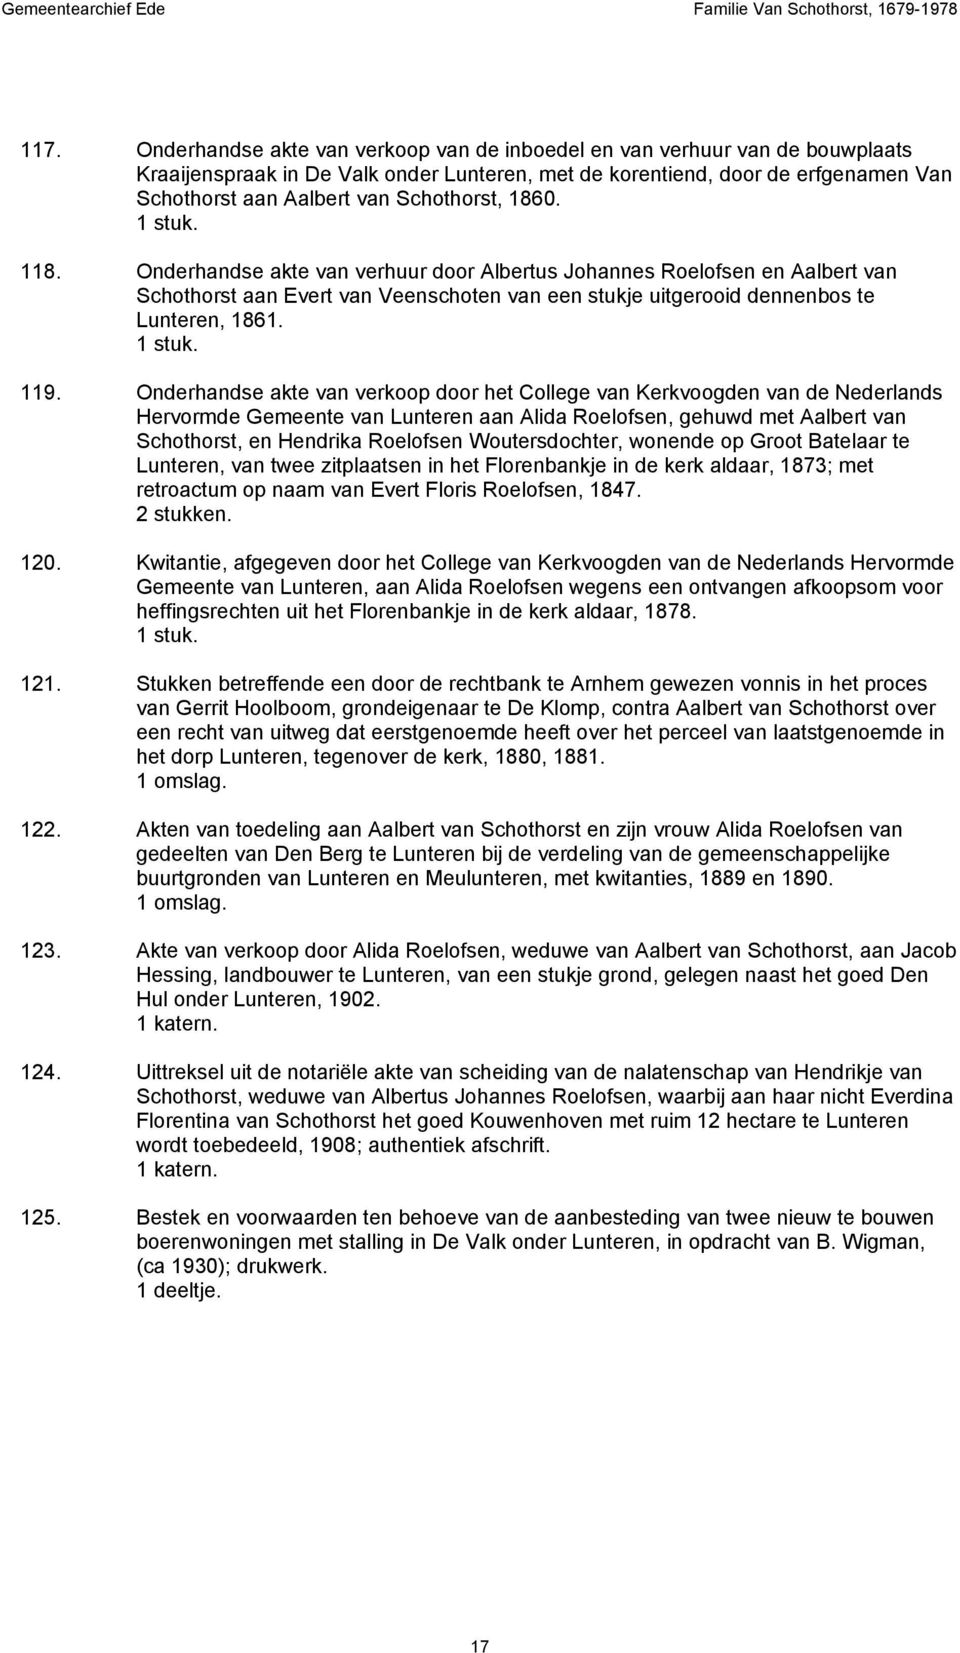 Onderhandse akte van verkoop door het College van Kerkvoogden van de Nederlands Hervormde Gemeente van Lunteren aan Alida Roelofsen, gehuwd met Aalbert van Schothorst, en Hendrika Roelofsen